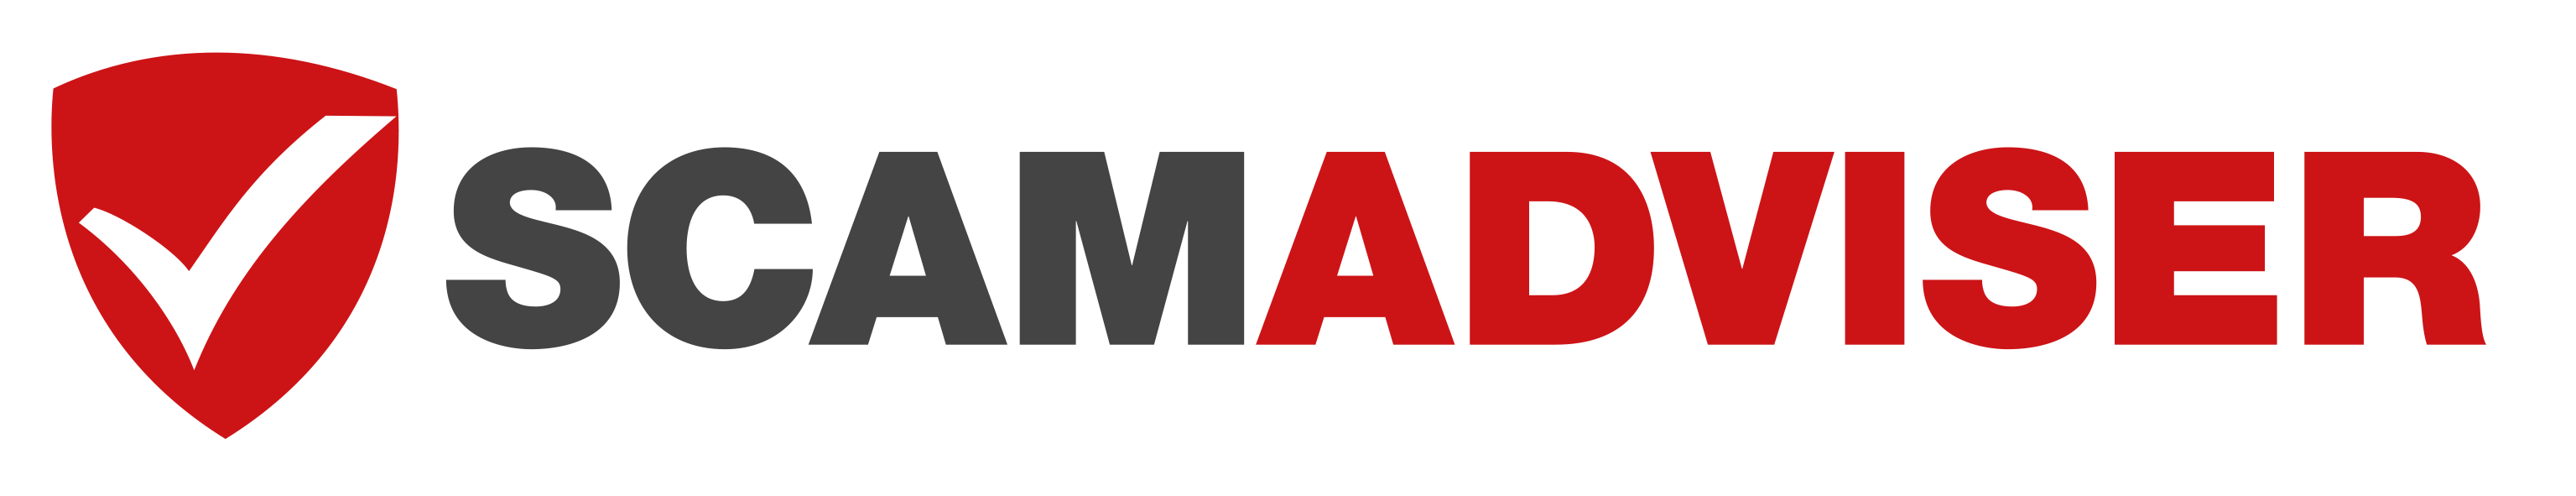 Scamadviser integration for Maltego